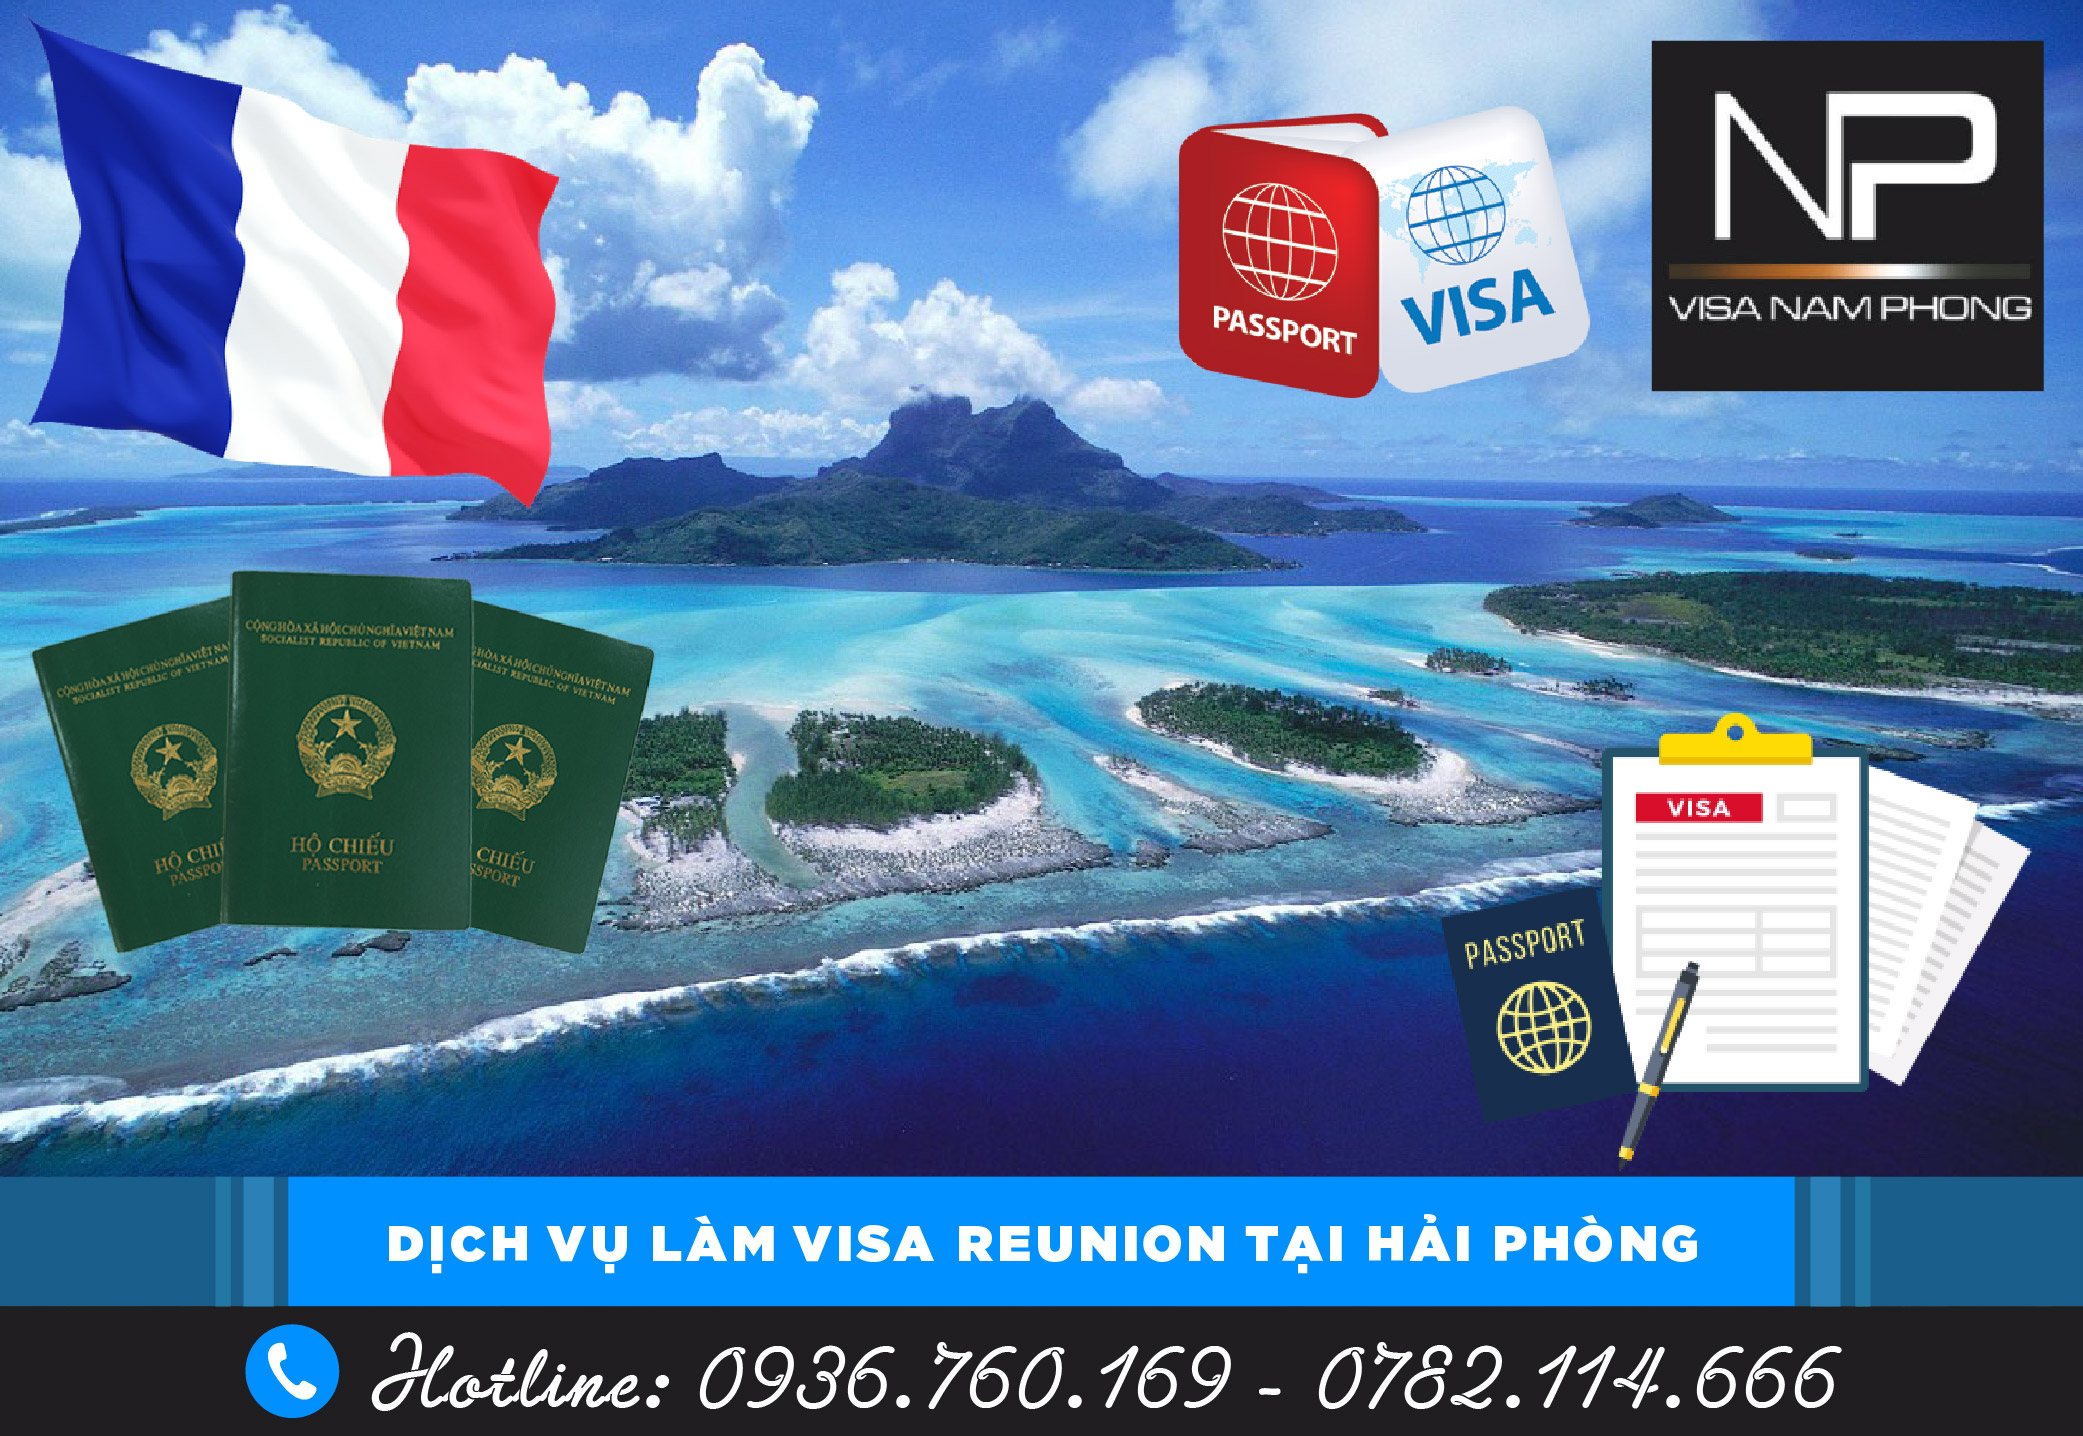 Tư vấn đáo hạn hộ chiếu 6 tháng khi xin Visa tại Hải Phòng